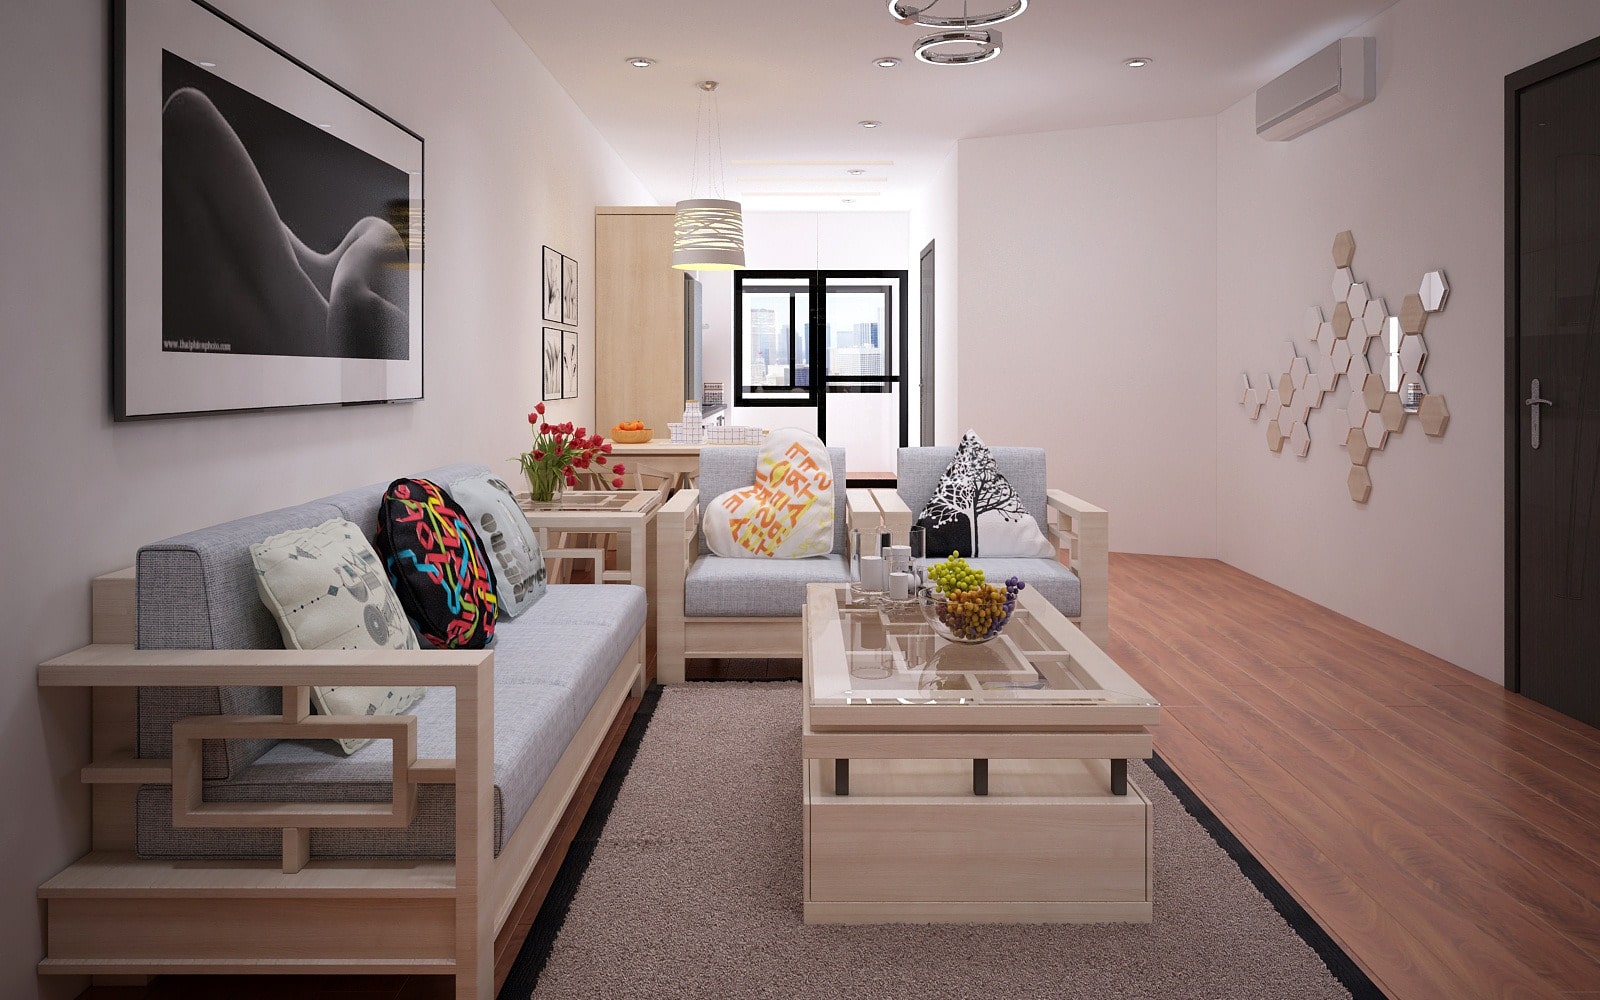 Phong cách thiết kế nội thất chung cư đơn giản nhưng vẫn rất hiện đại